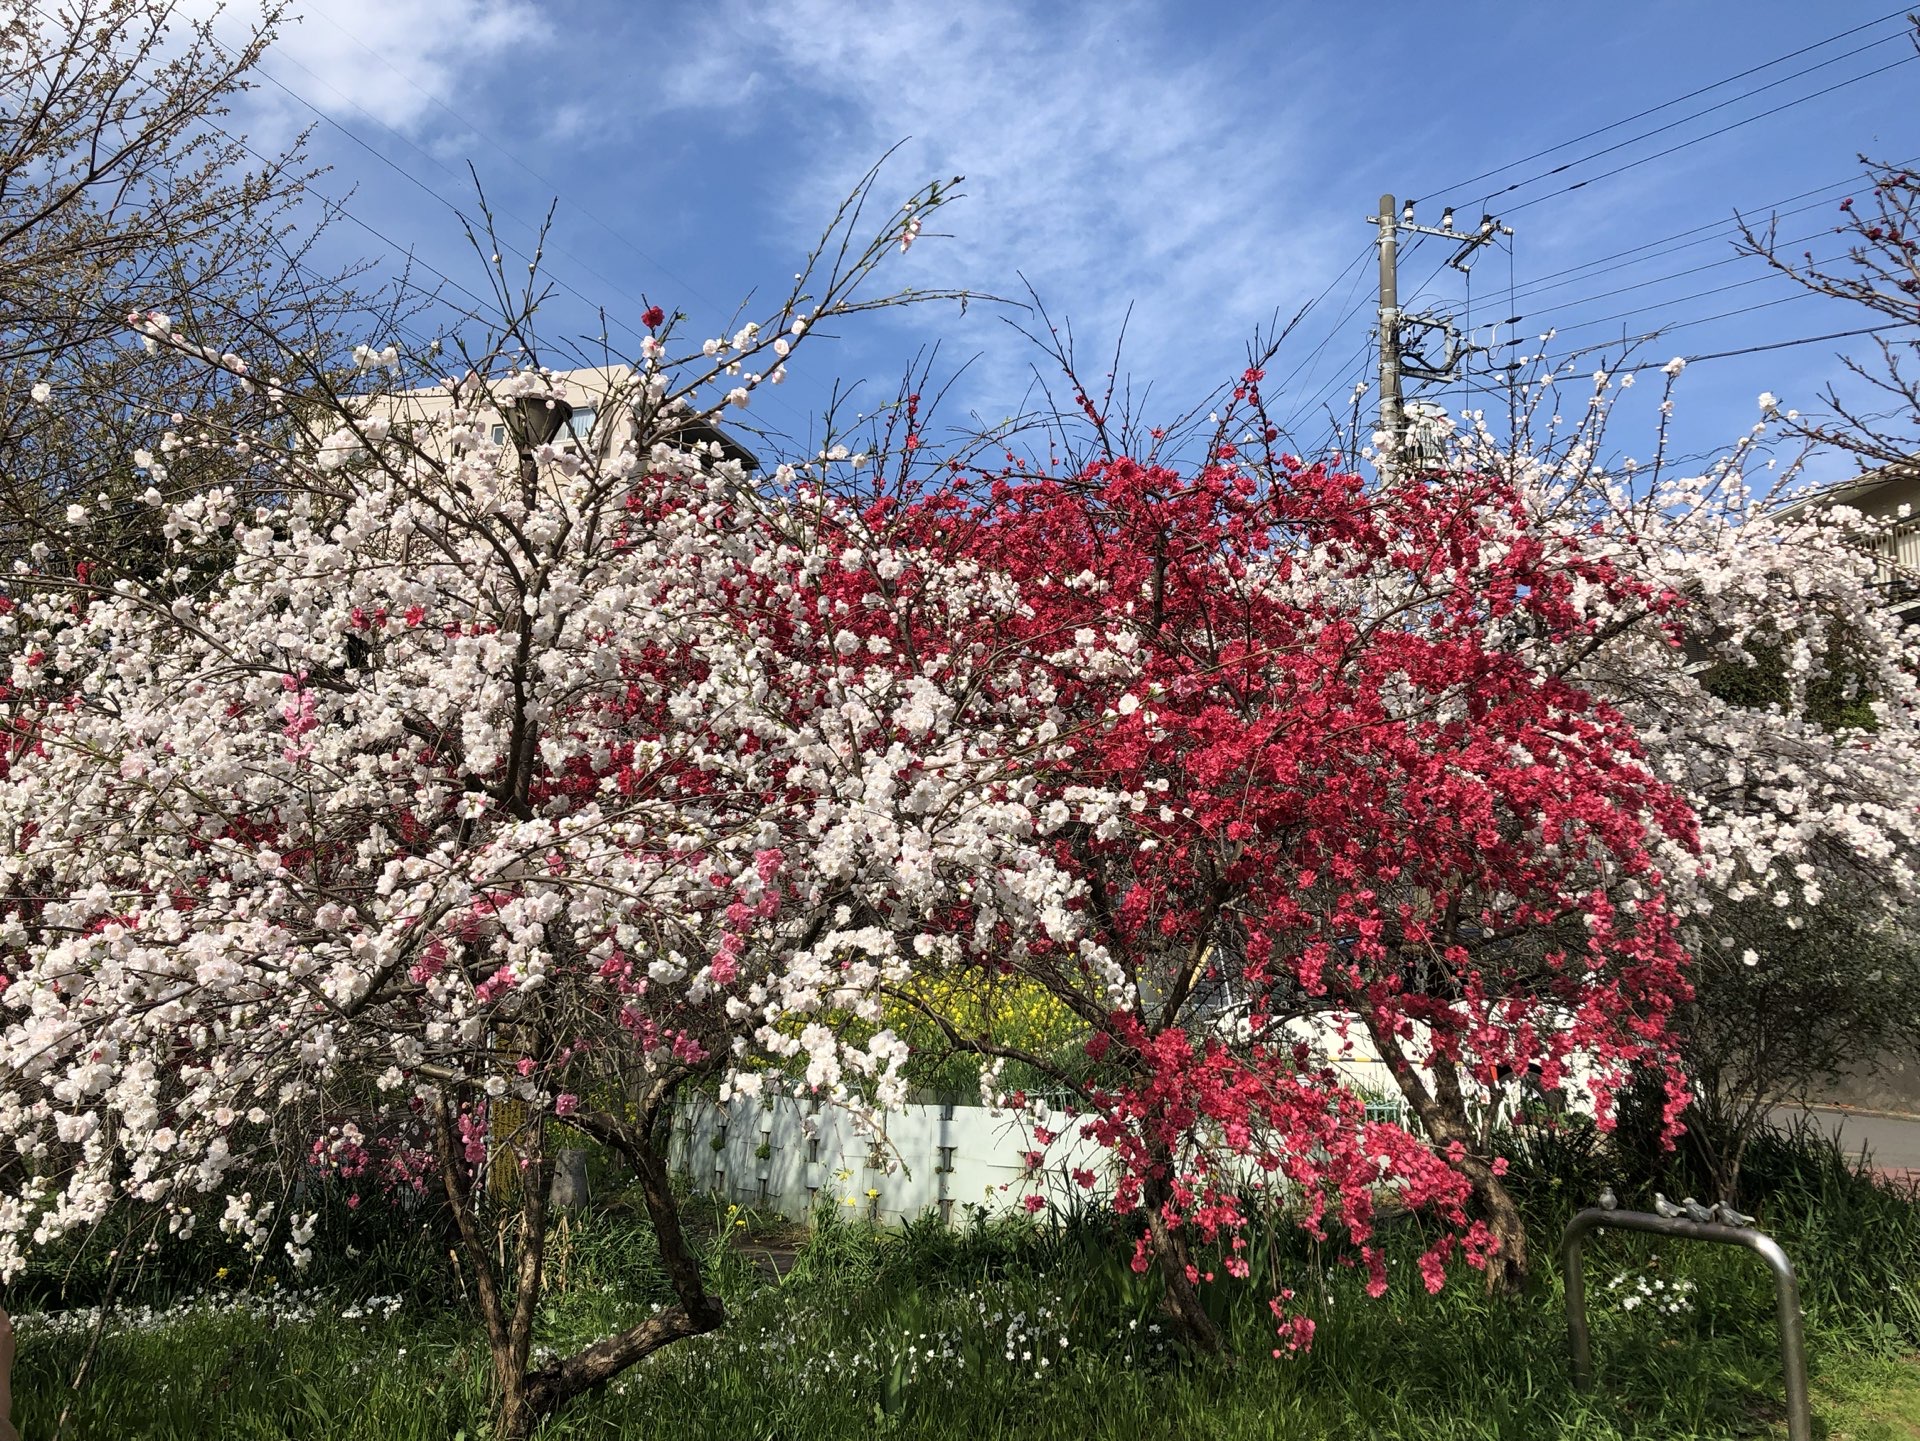 樱花盛开 享受春天活泼生机 大自然的秘密带来无限遐想 走进花的季节 每一天都是精彩 #发现旅途的色彩